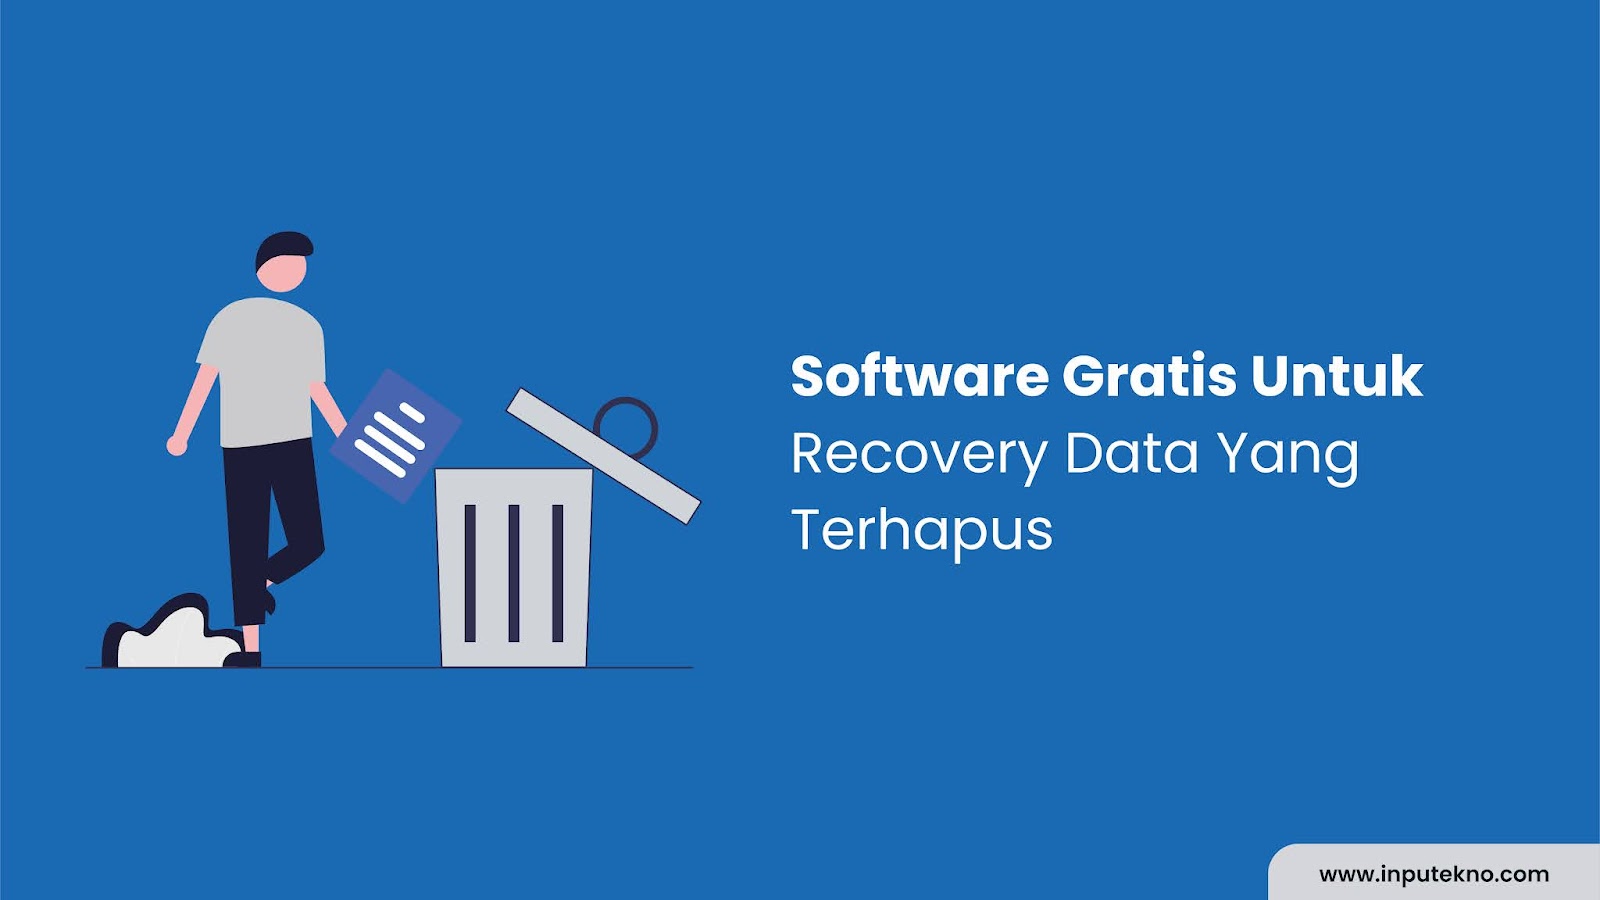 Software Gratis Untuk Recovery Data Yang Terhapus